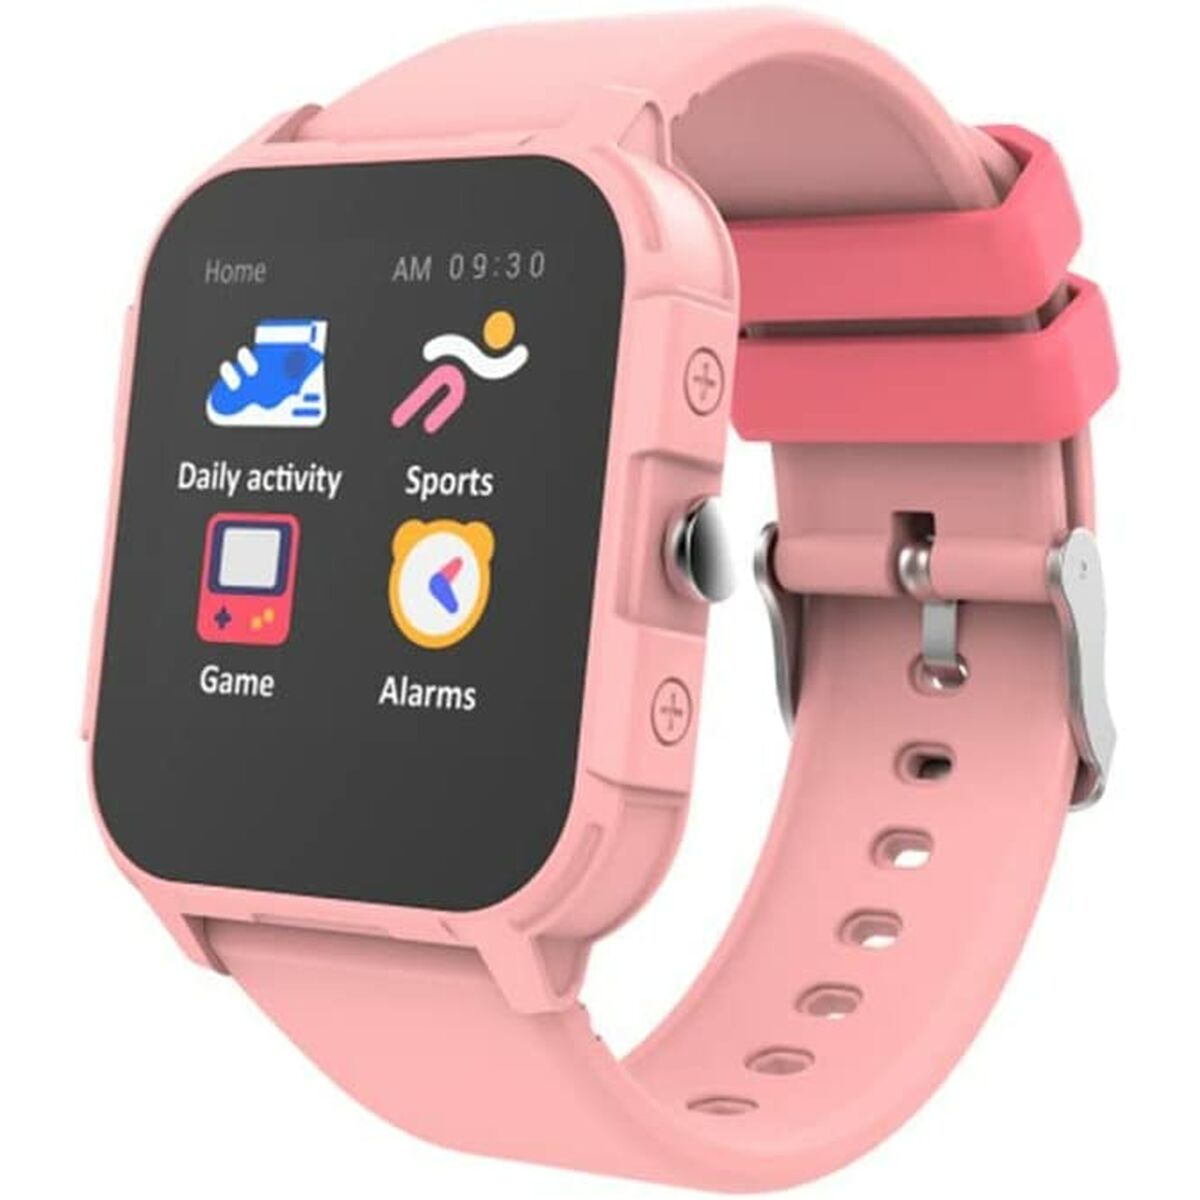 Smartwatch für Kinder Cool Junior 1,44" Rosa (1 Stück) - CA International 